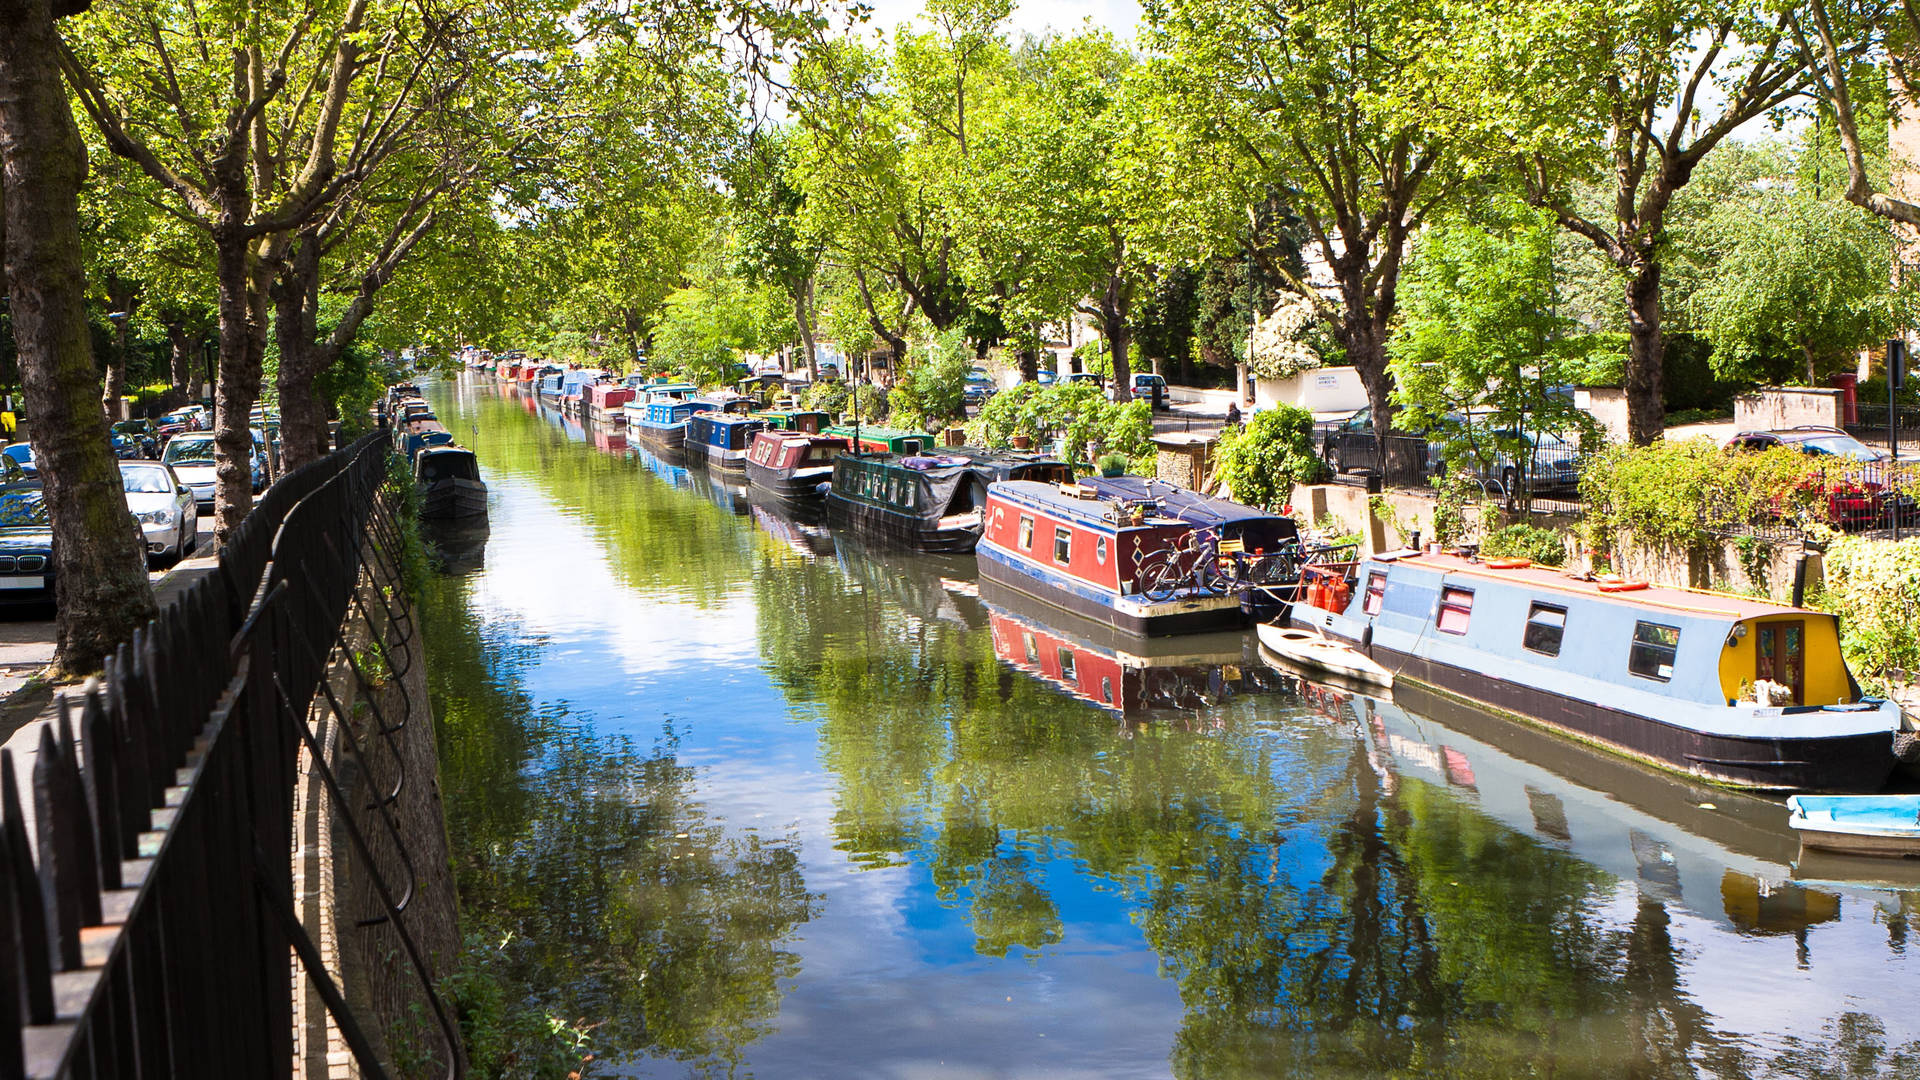 Regents Canal Little Venice London waterway